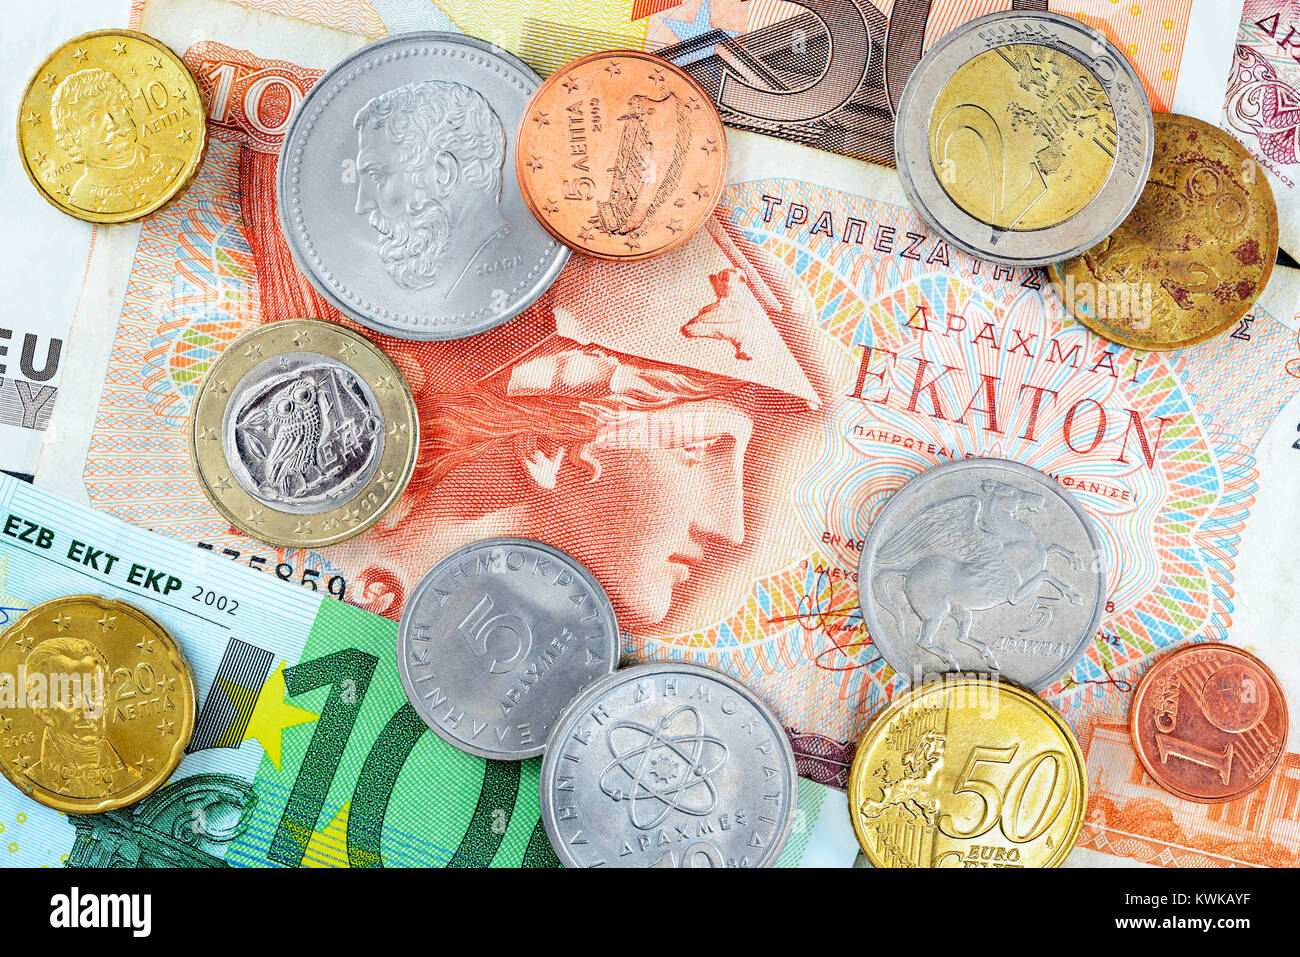 Greek drachms, euronotes et eurocoins Drachmen, Griechische, Euroscheine Eurom ?nzen und Banque D'Images